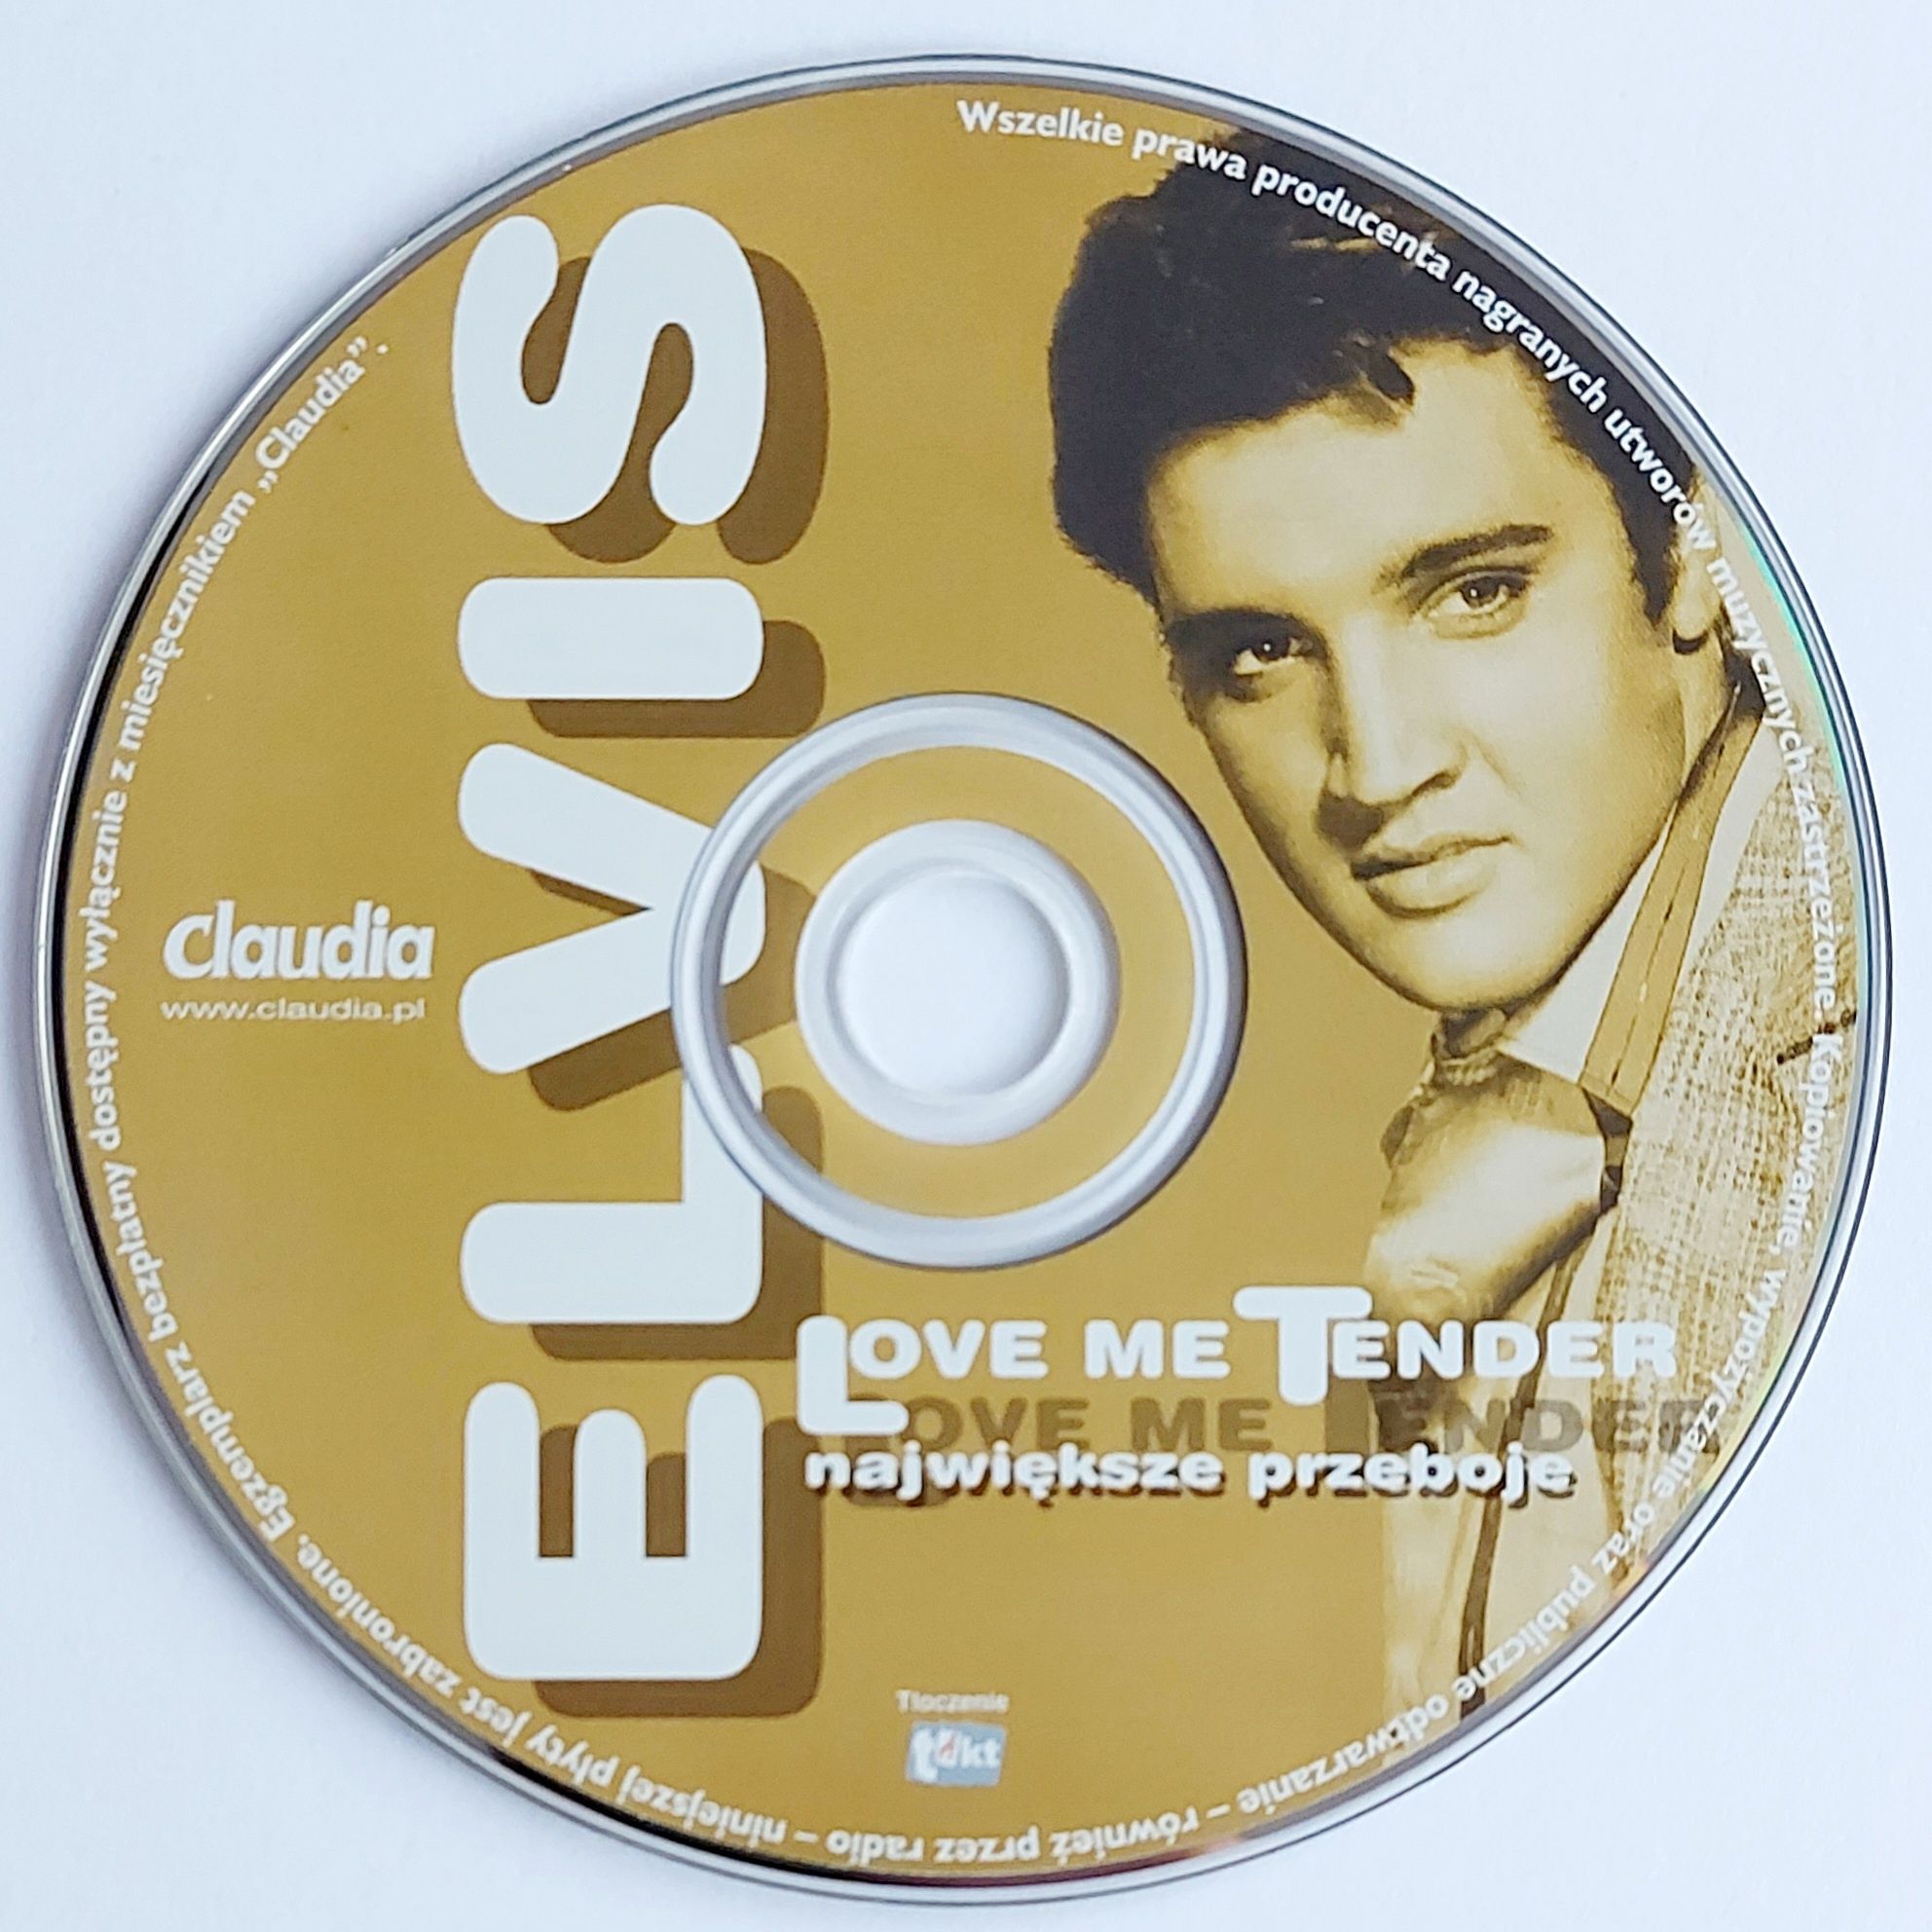 Elvis Presley Love Me Tender